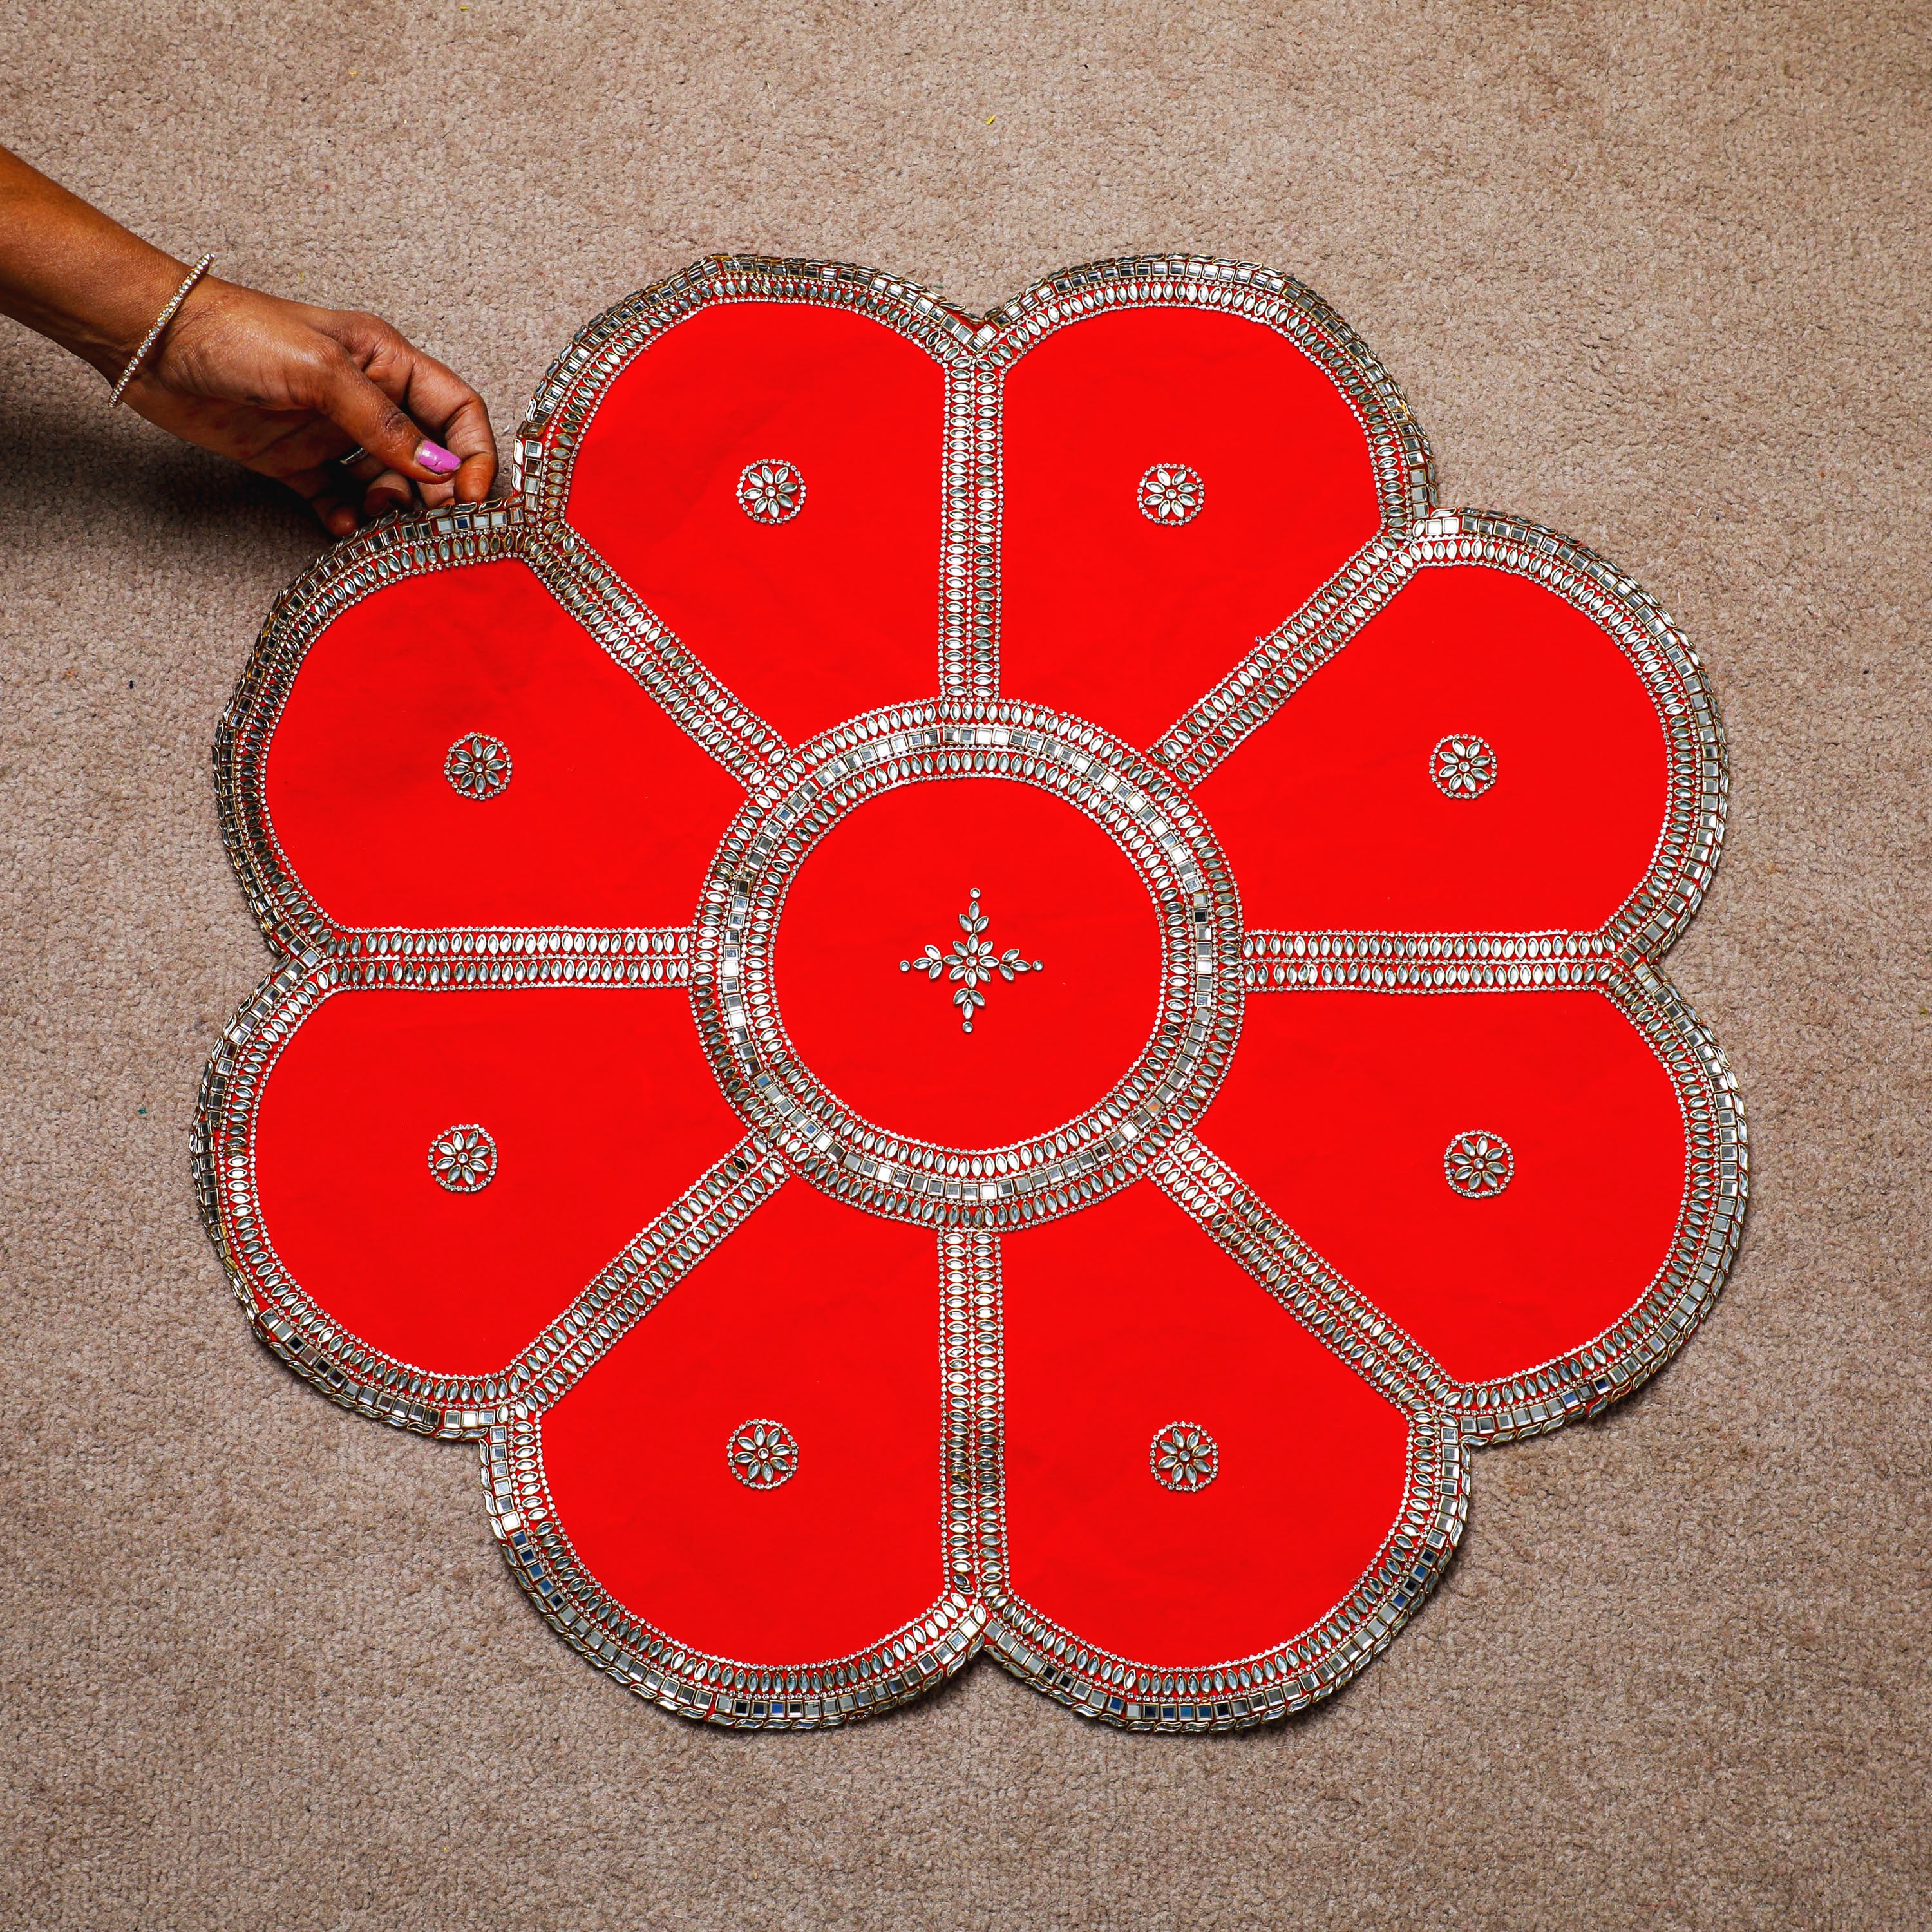 Multipurpose, lightweight, reusable rangoli mat.